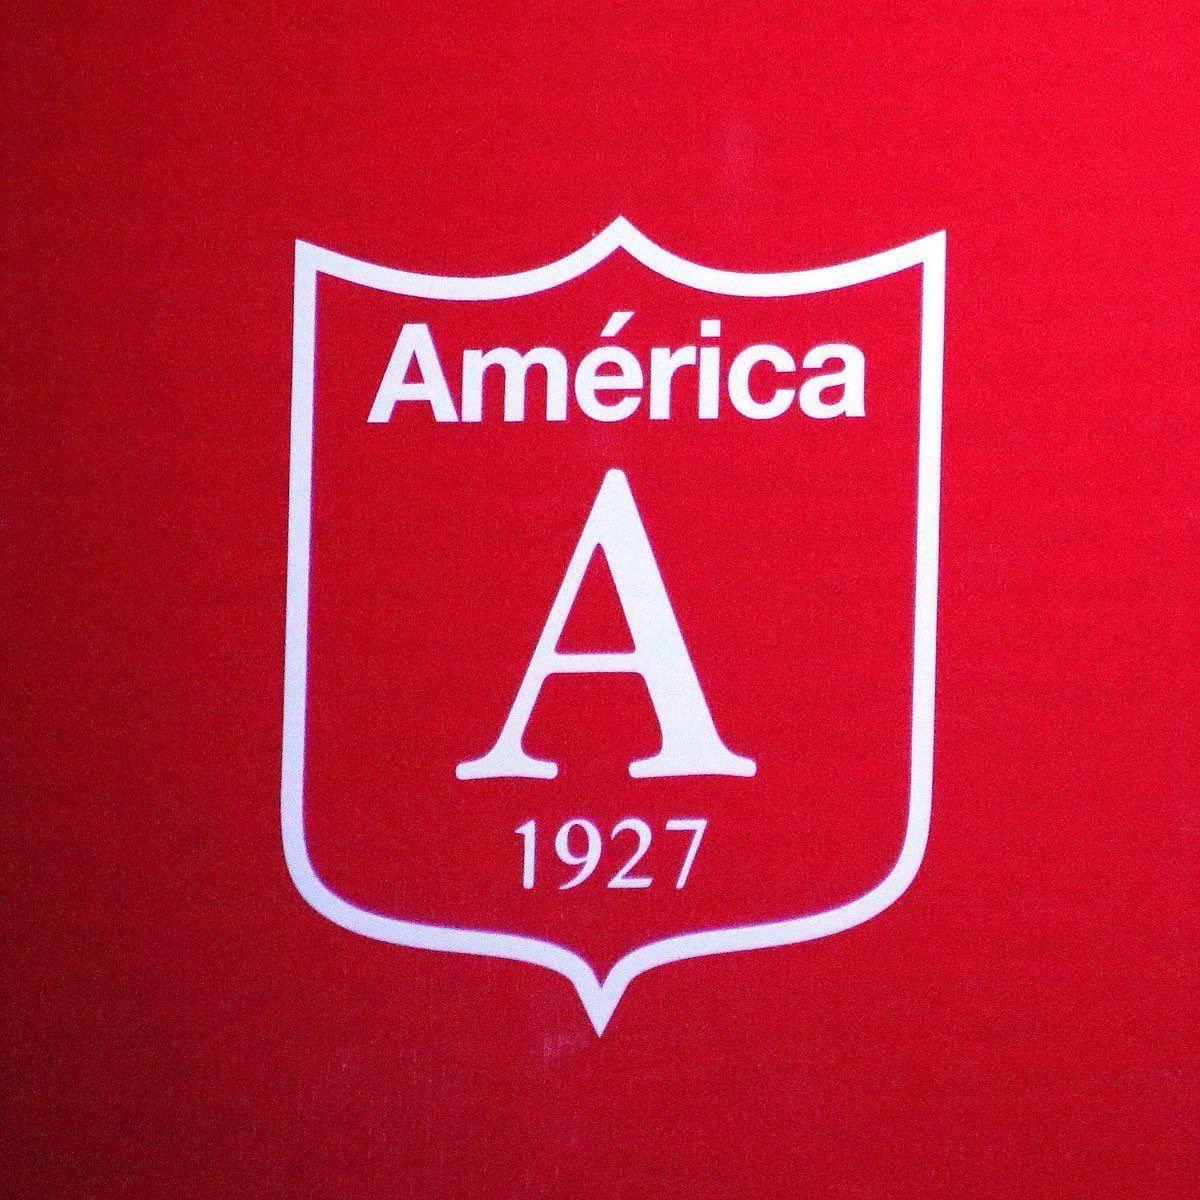 Later Logo - America de Cali Reveals Controversial New Retro Logo - Fans Do Not ...